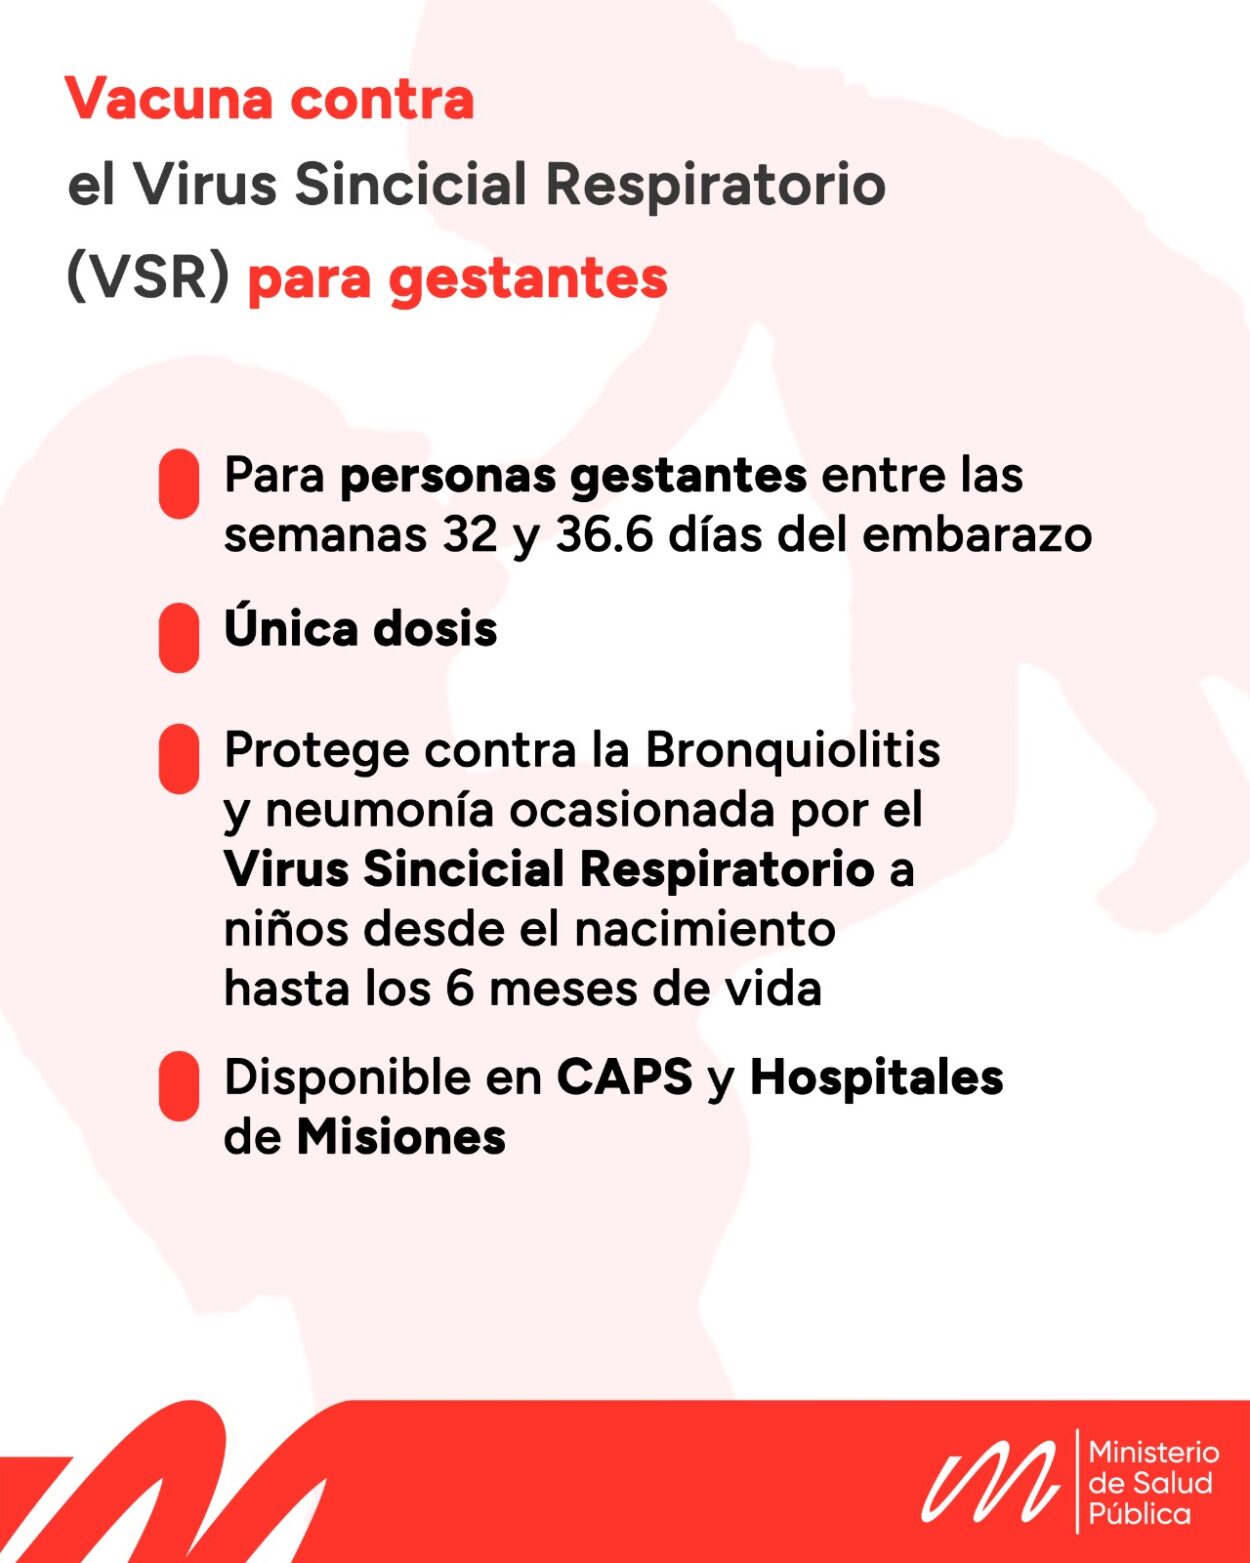 El próximo lunes arrancará la vacunación contra el Virus Sincicial Respiratorio para personas gestantes en Misiones imagen-2